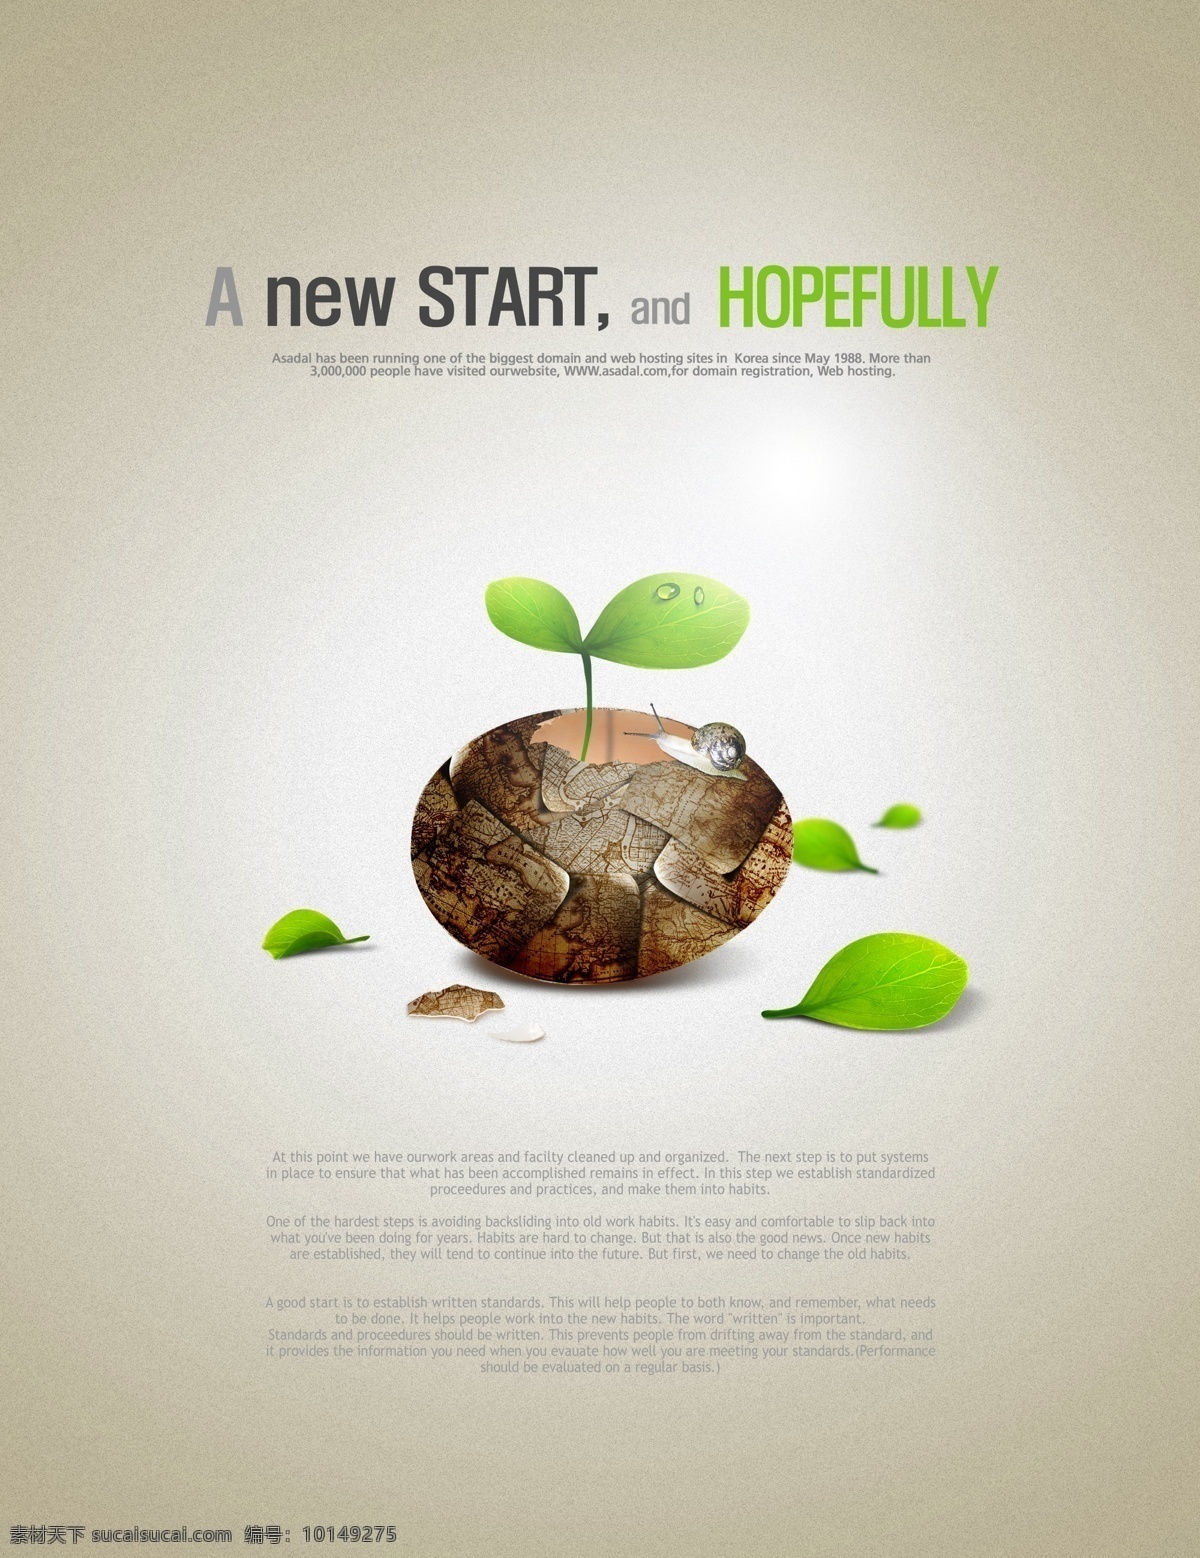 环保概念海报 保护地球 能源保护 绿色环保 节能环保 鸡蛋 绿芽 蜗牛 画册设计 广告设计模板 psd素材 白色